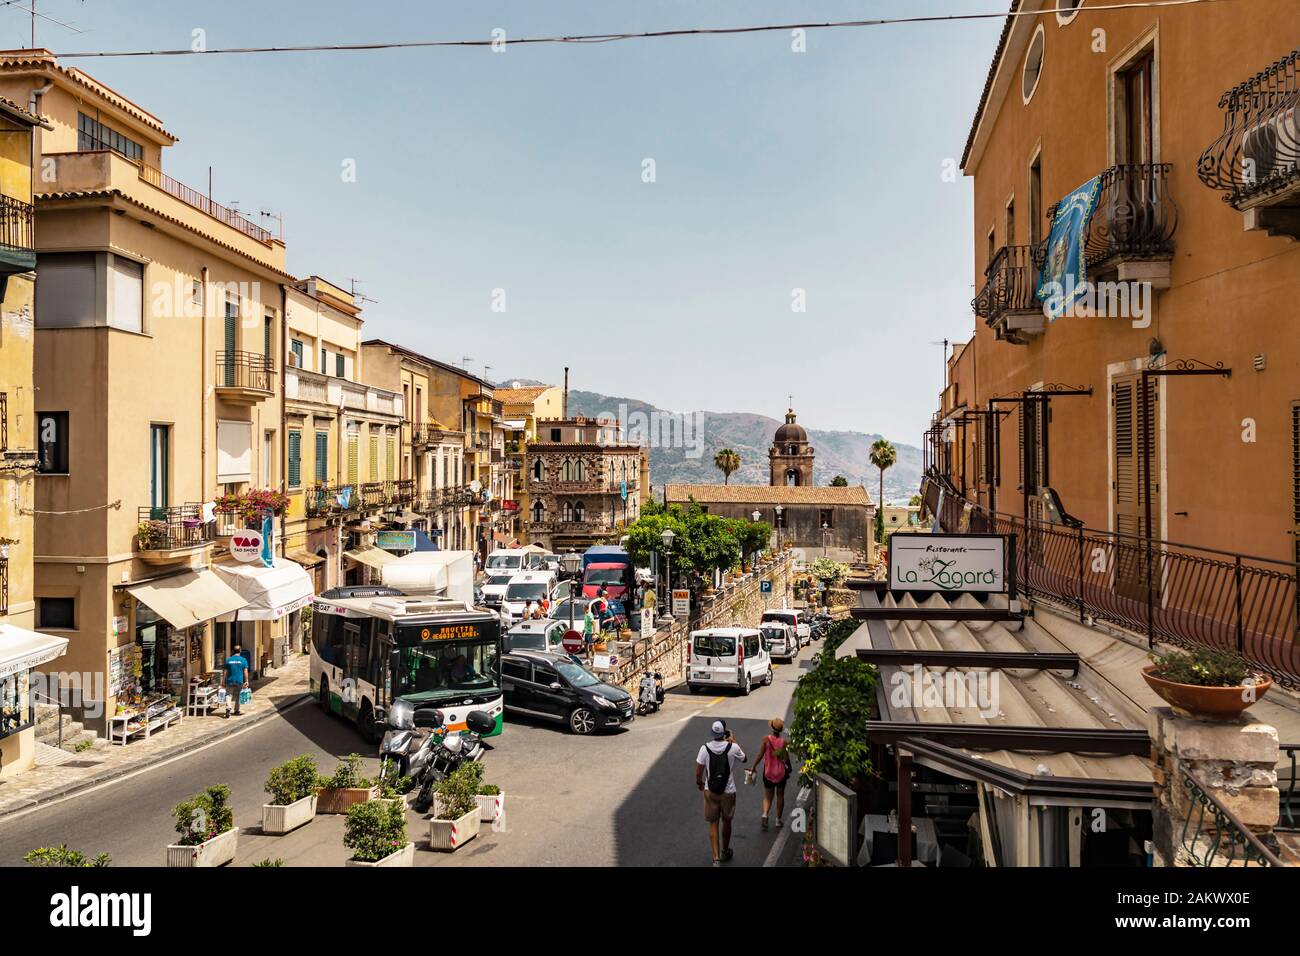 Taormina-Sizilien, Italien - 9. Juli 2019: Stadtbild Blick auf die Altstadt von Taormina mit der Kirche Sankt Pancras im Hintergrund Stockfoto